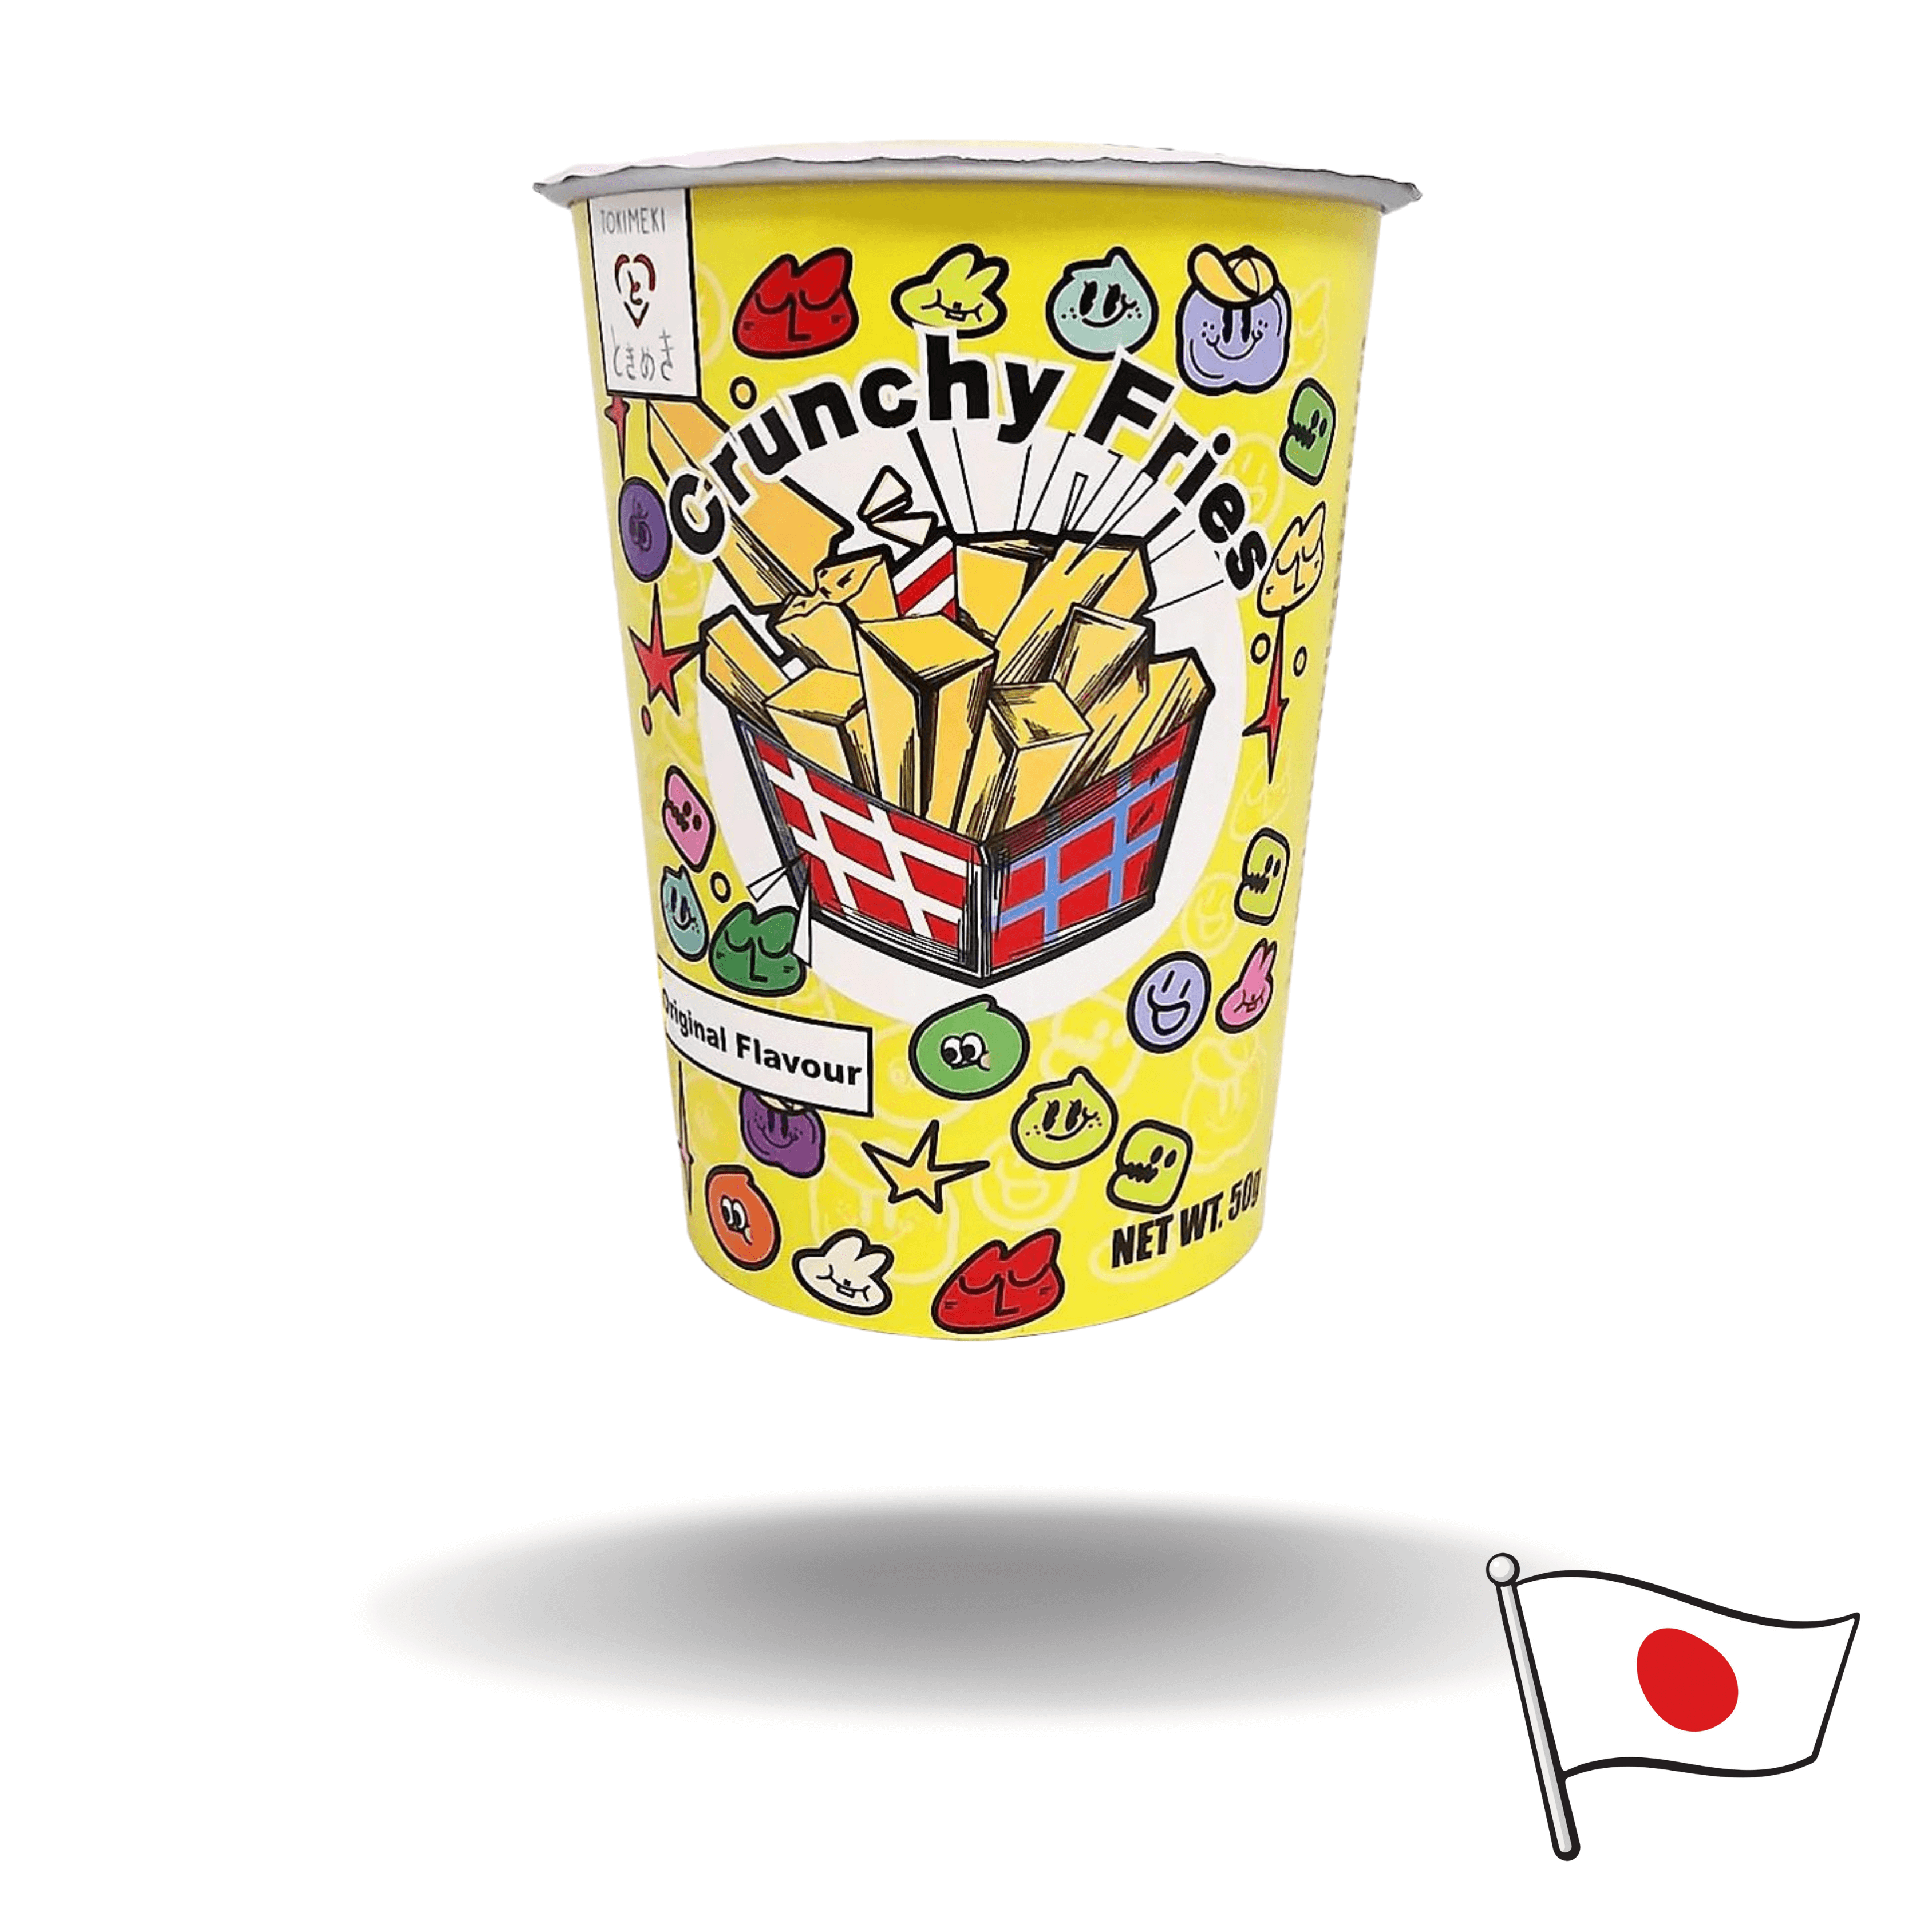 Die "Crunchy Fries Original Flavour 50g" sind dünn geschnittene Kartoffelstäbchen, die zu knusprigen Pommes-Chips verarbeitet wurden